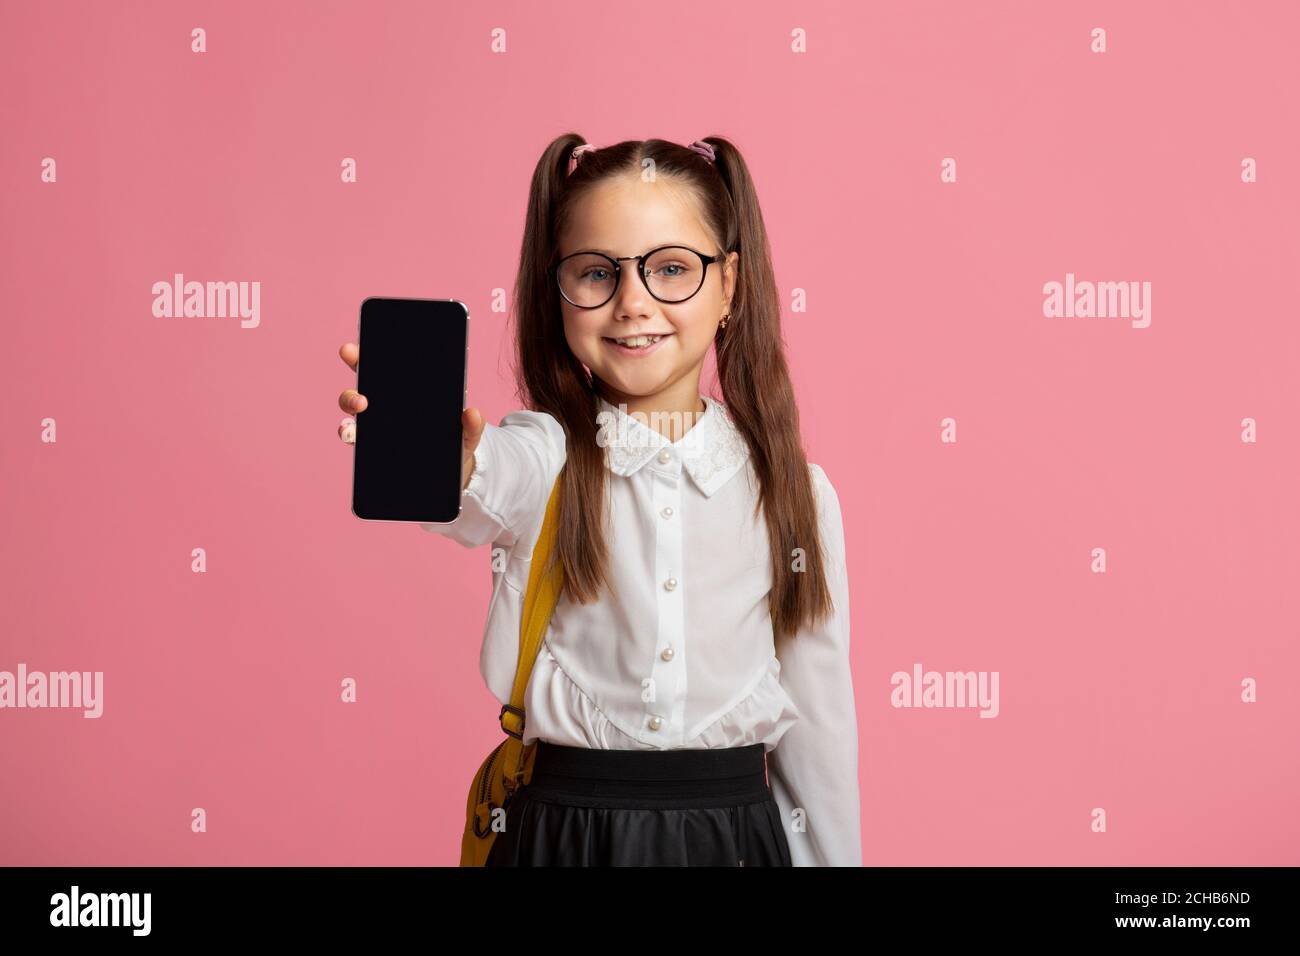 Technologie und Schule. Kleines Kind in Brille in Uniform zeigt Telefon Stockfoto